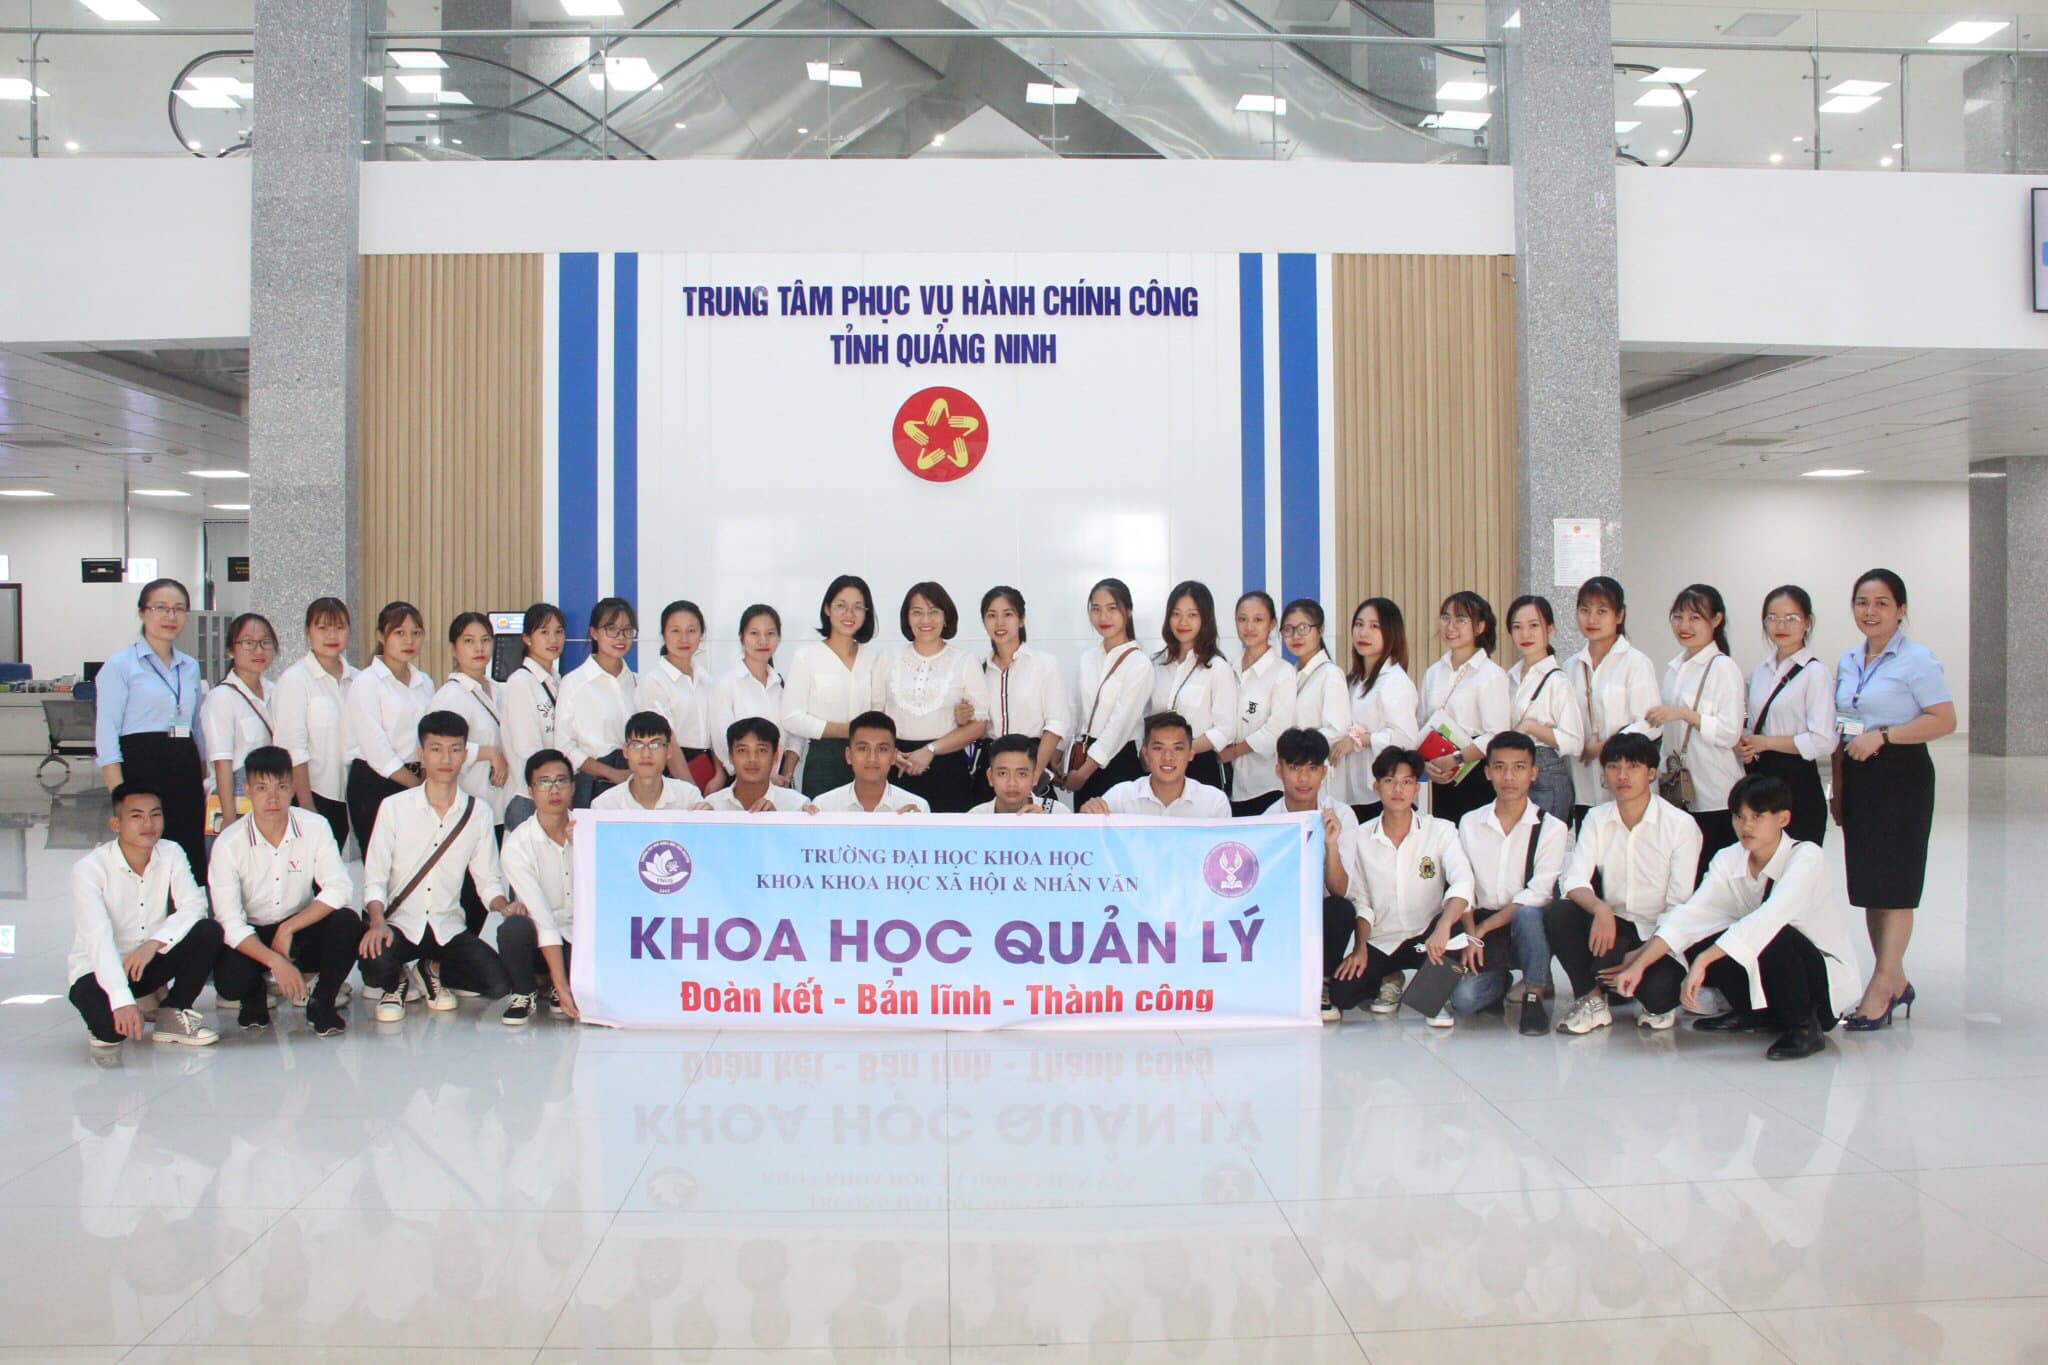 Thực tế chuyên môn 1 ngành Khoa học quản lý tại Trung tâm PVHCC tỉnh Quảng Ninh